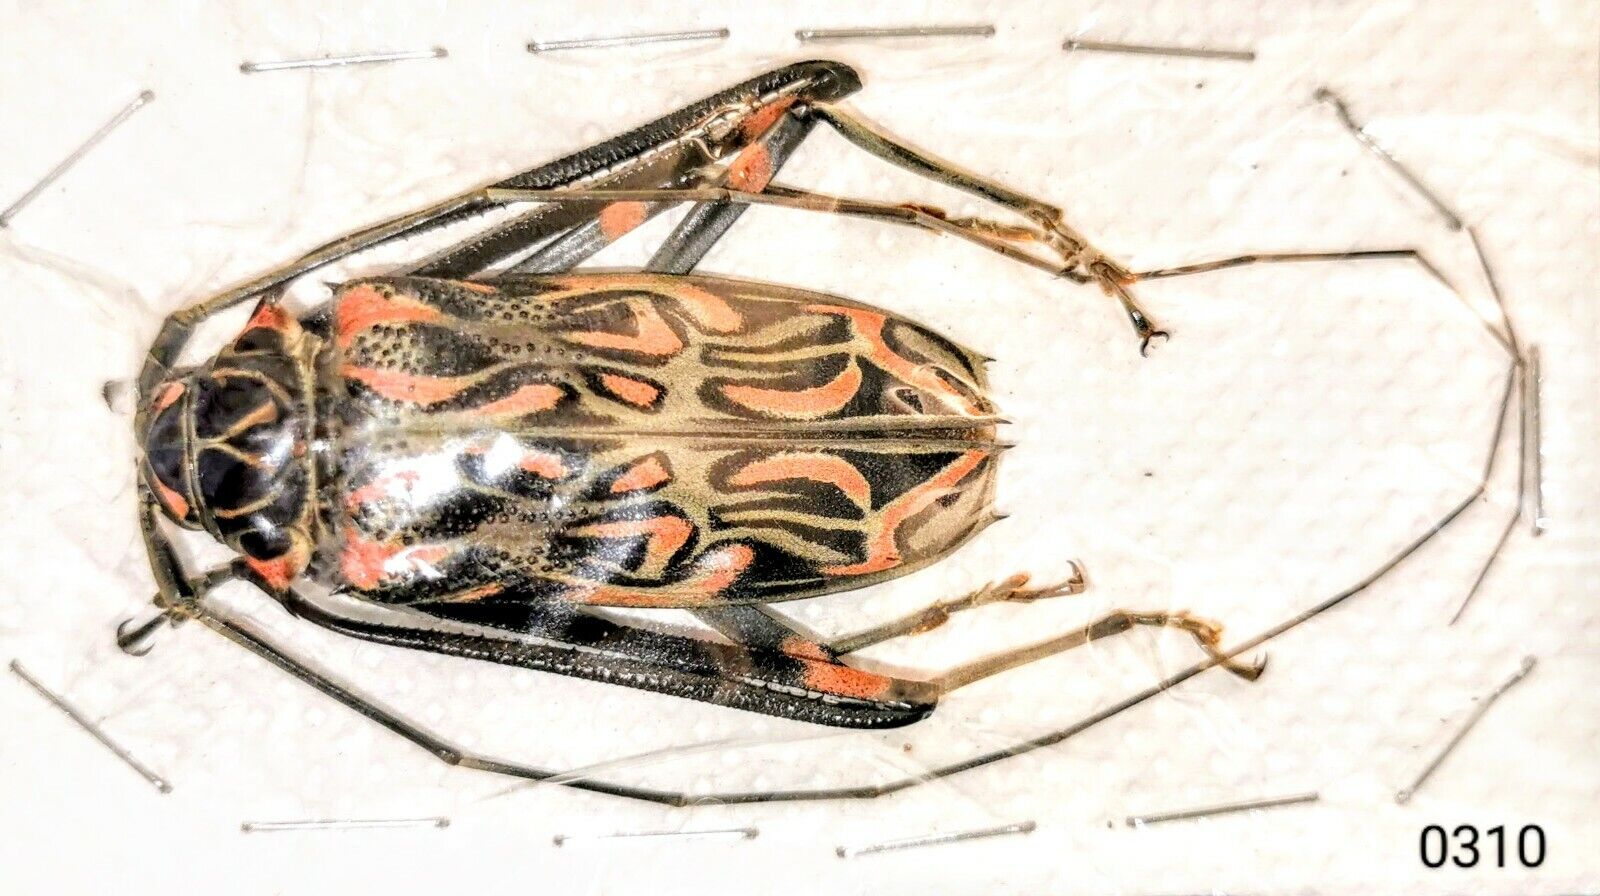 Cerambycidae Acrocinus longimanus 50-55mm MALE A1 or A- VENEZUELA - #0310 